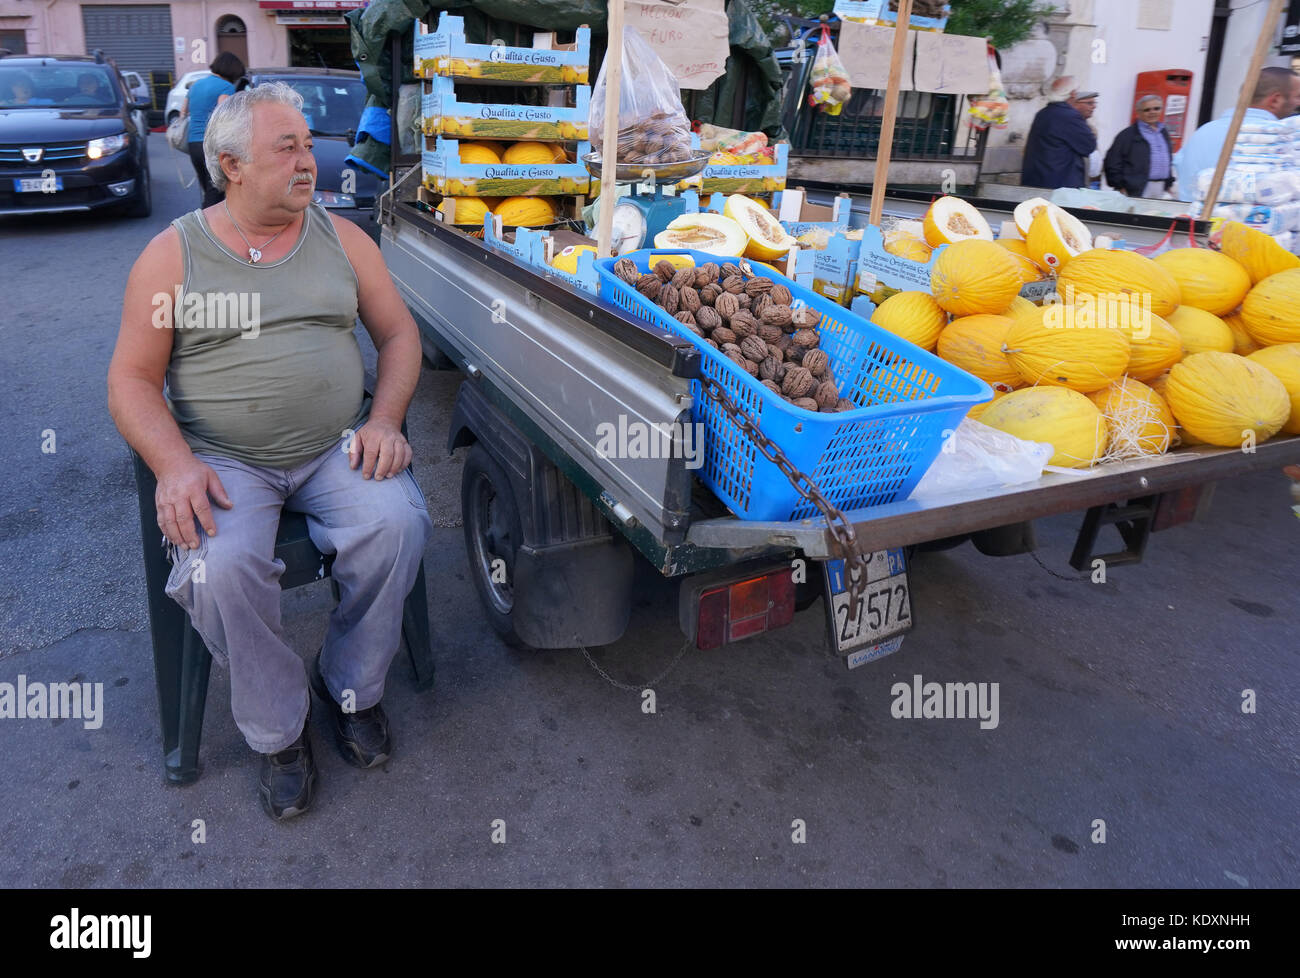 Ein Mann auf der Straße verkaufen Obst in Monreale. Aus einer Serie von Fotos in Sizilien, Italien. foto Datum: Freitag, 6. Oktober 2017. Photo credit Shou Stockfoto